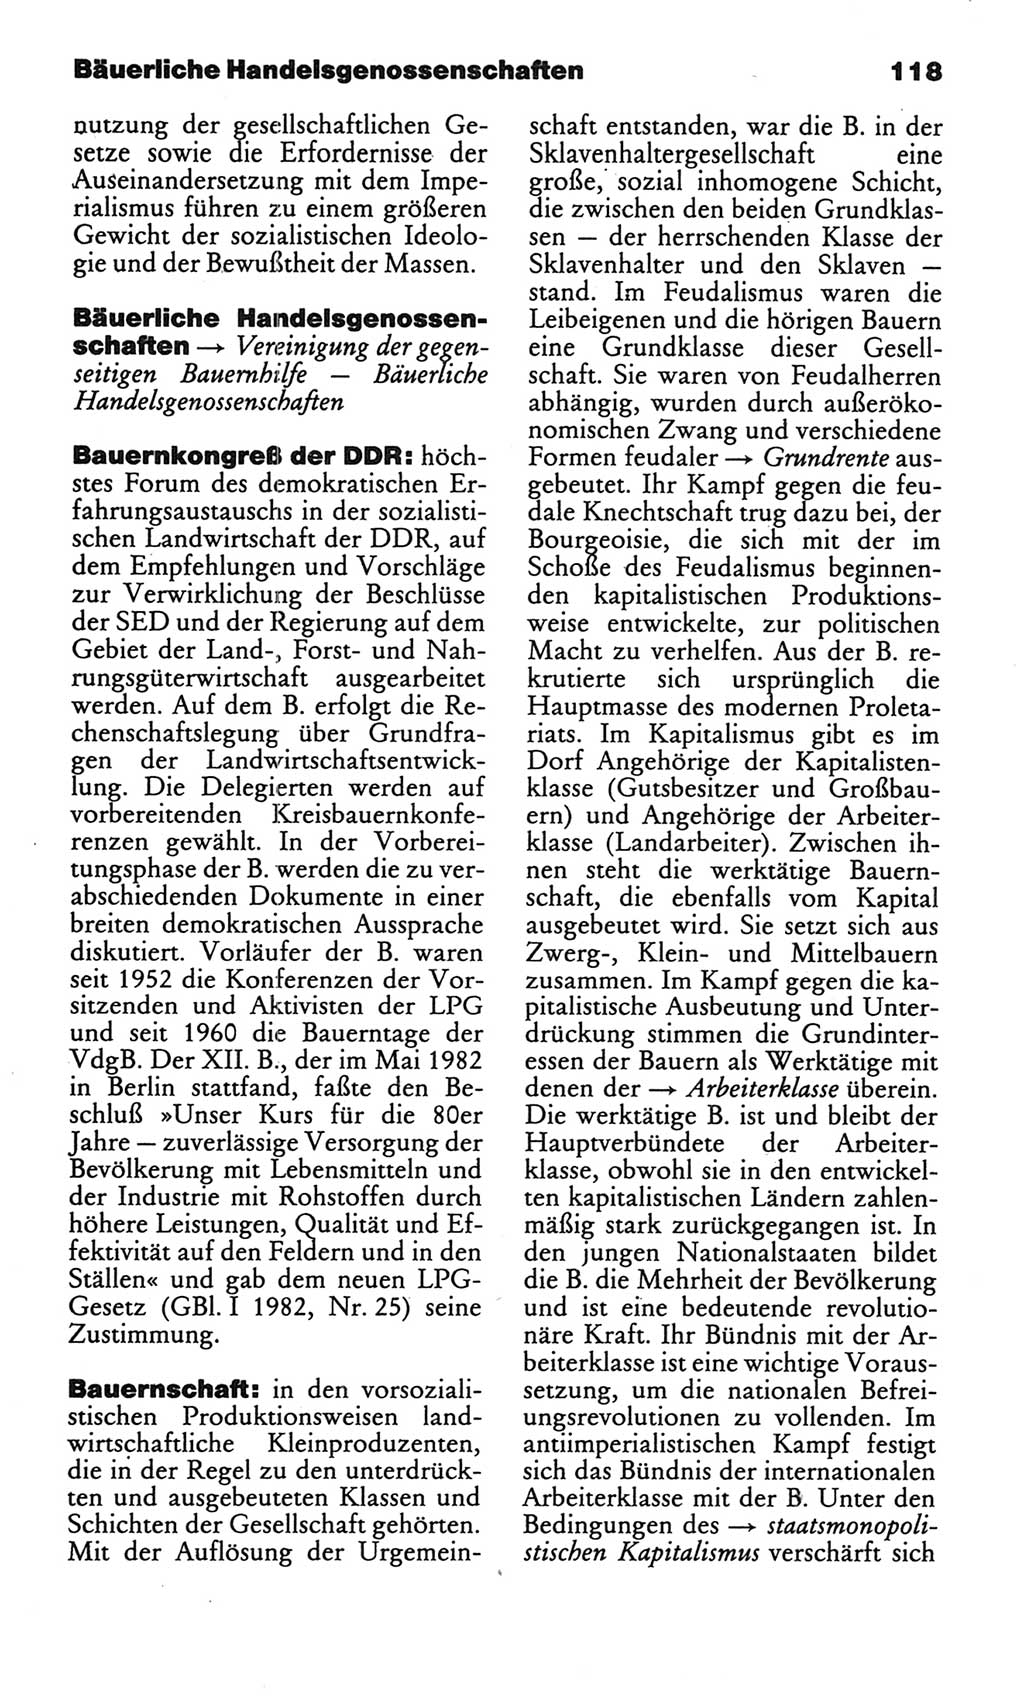 Kleines politisches Wörterbuch [Deutsche Demokratische Republik (DDR)] 1986, Seite 118 (Kl. pol. Wb. DDR 1986, S. 118)